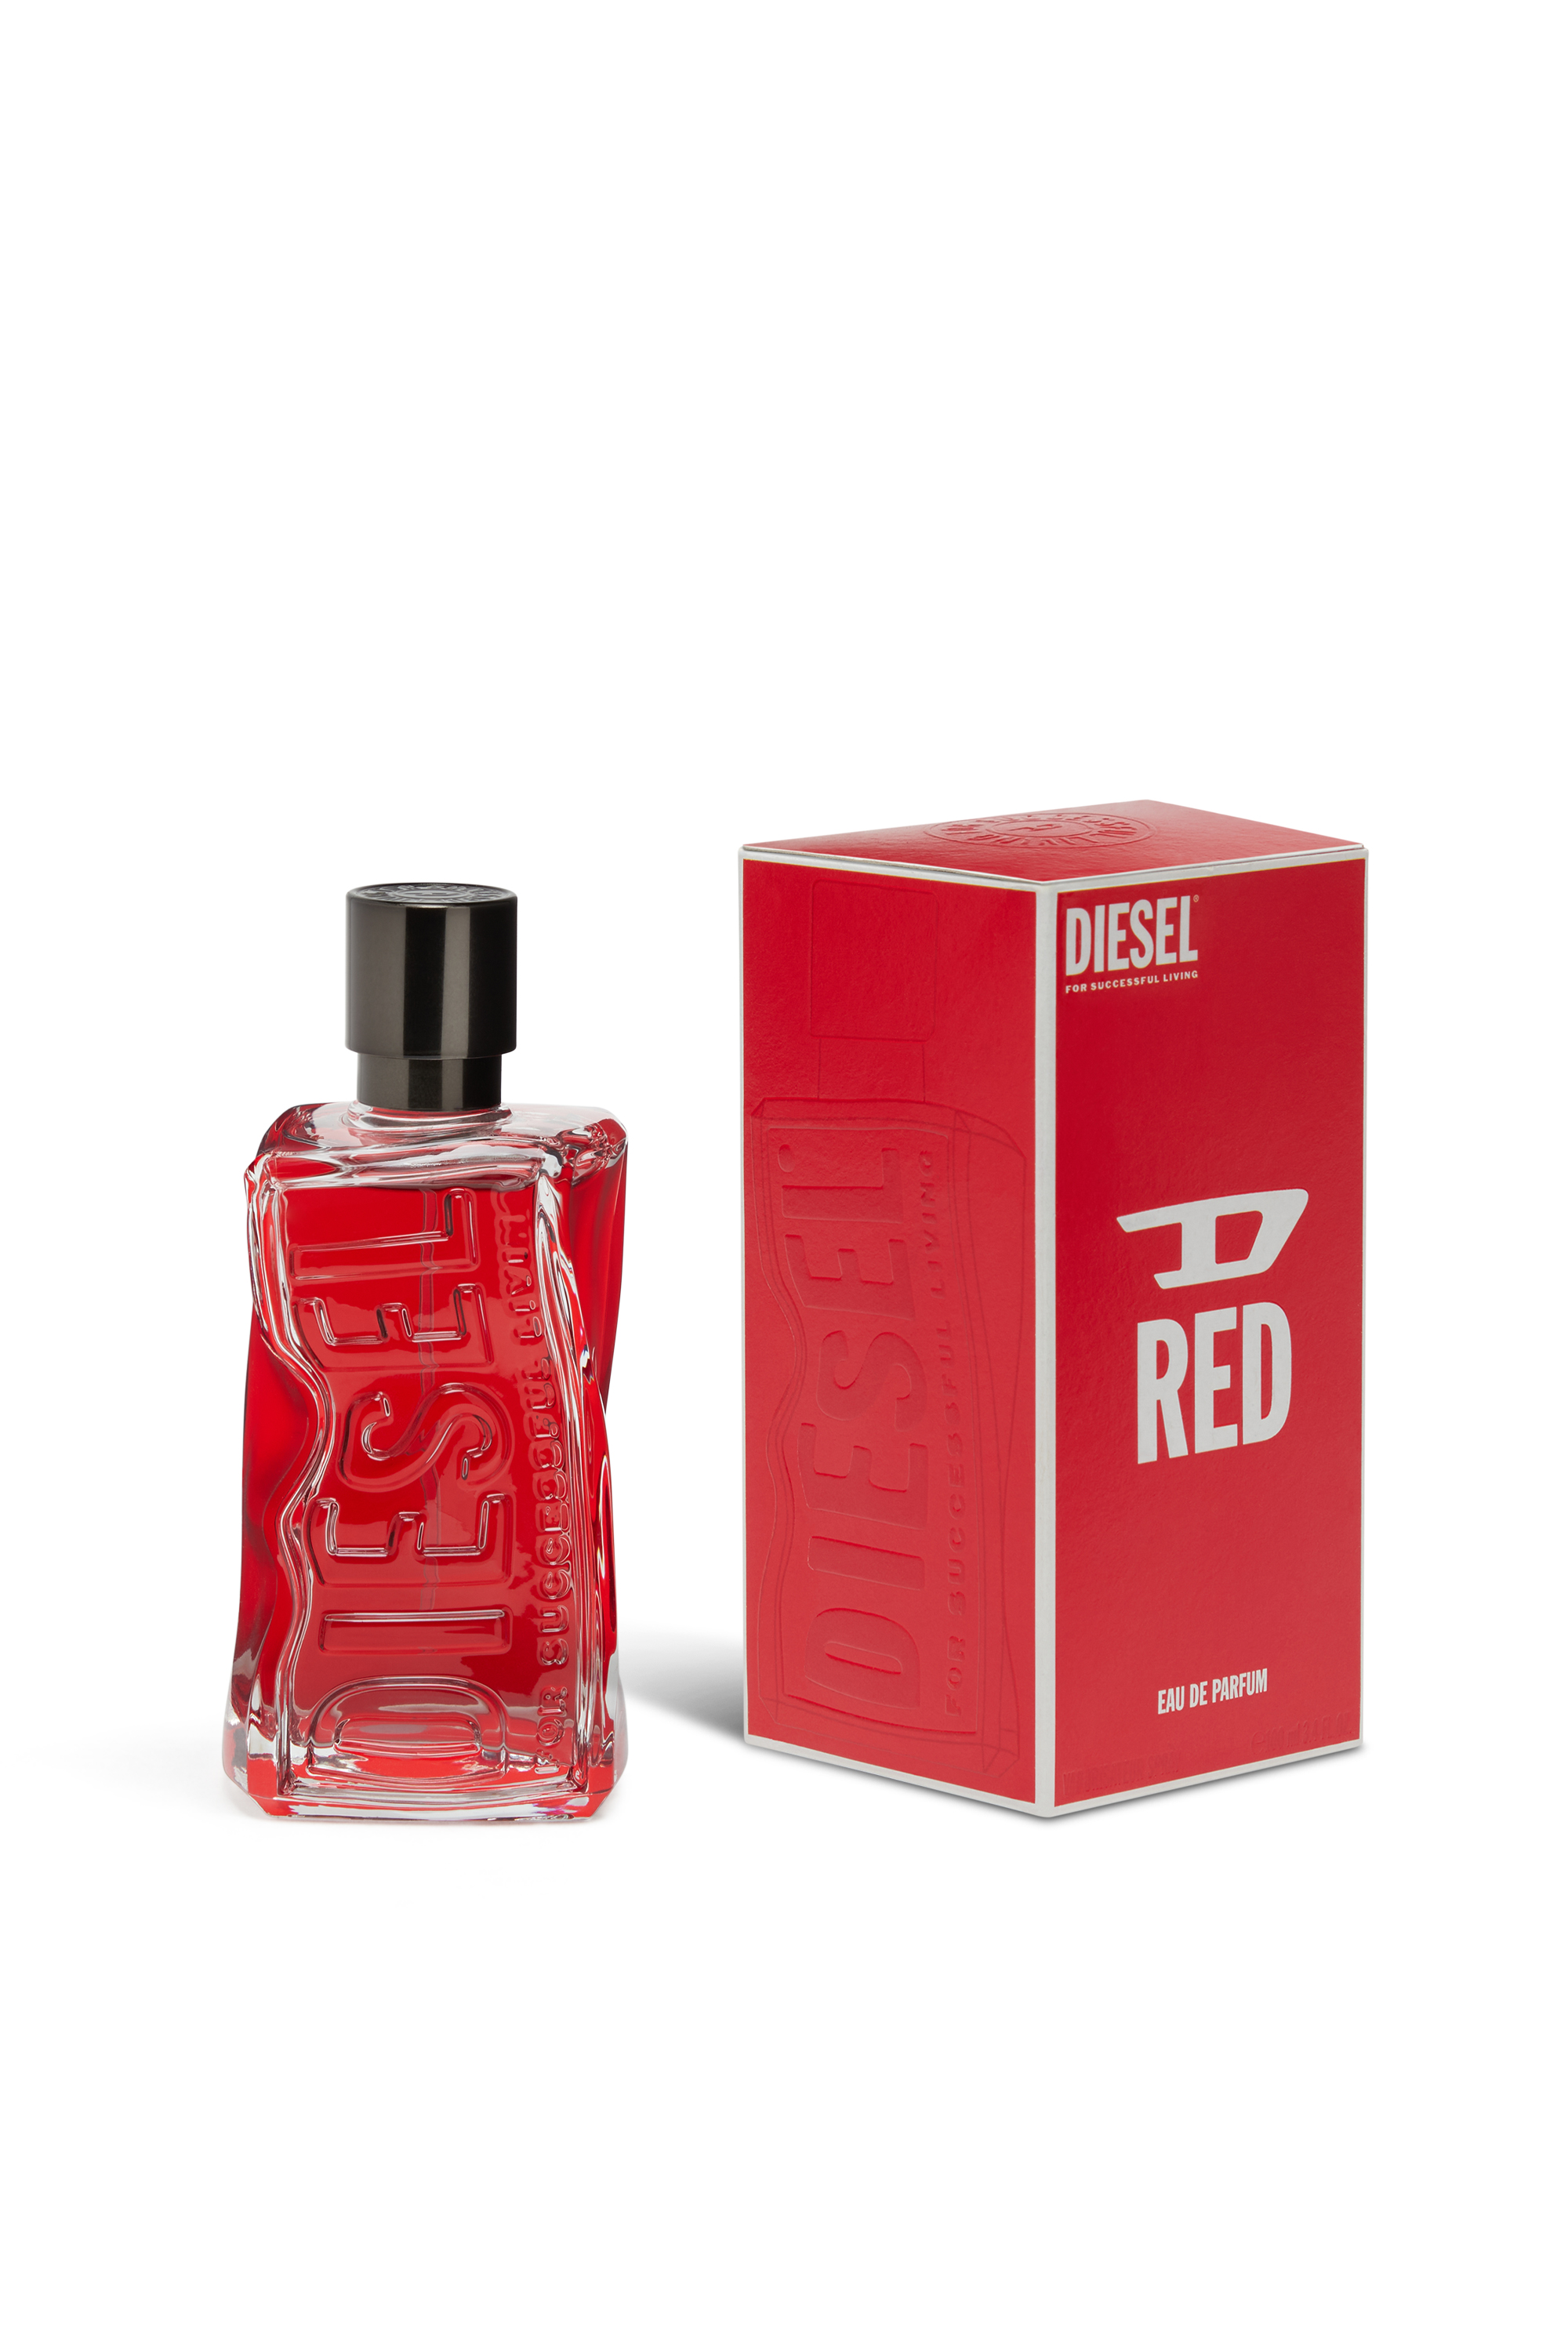 Diesel - D RED EDP 50 ML LE228700, Rouge - Image 2